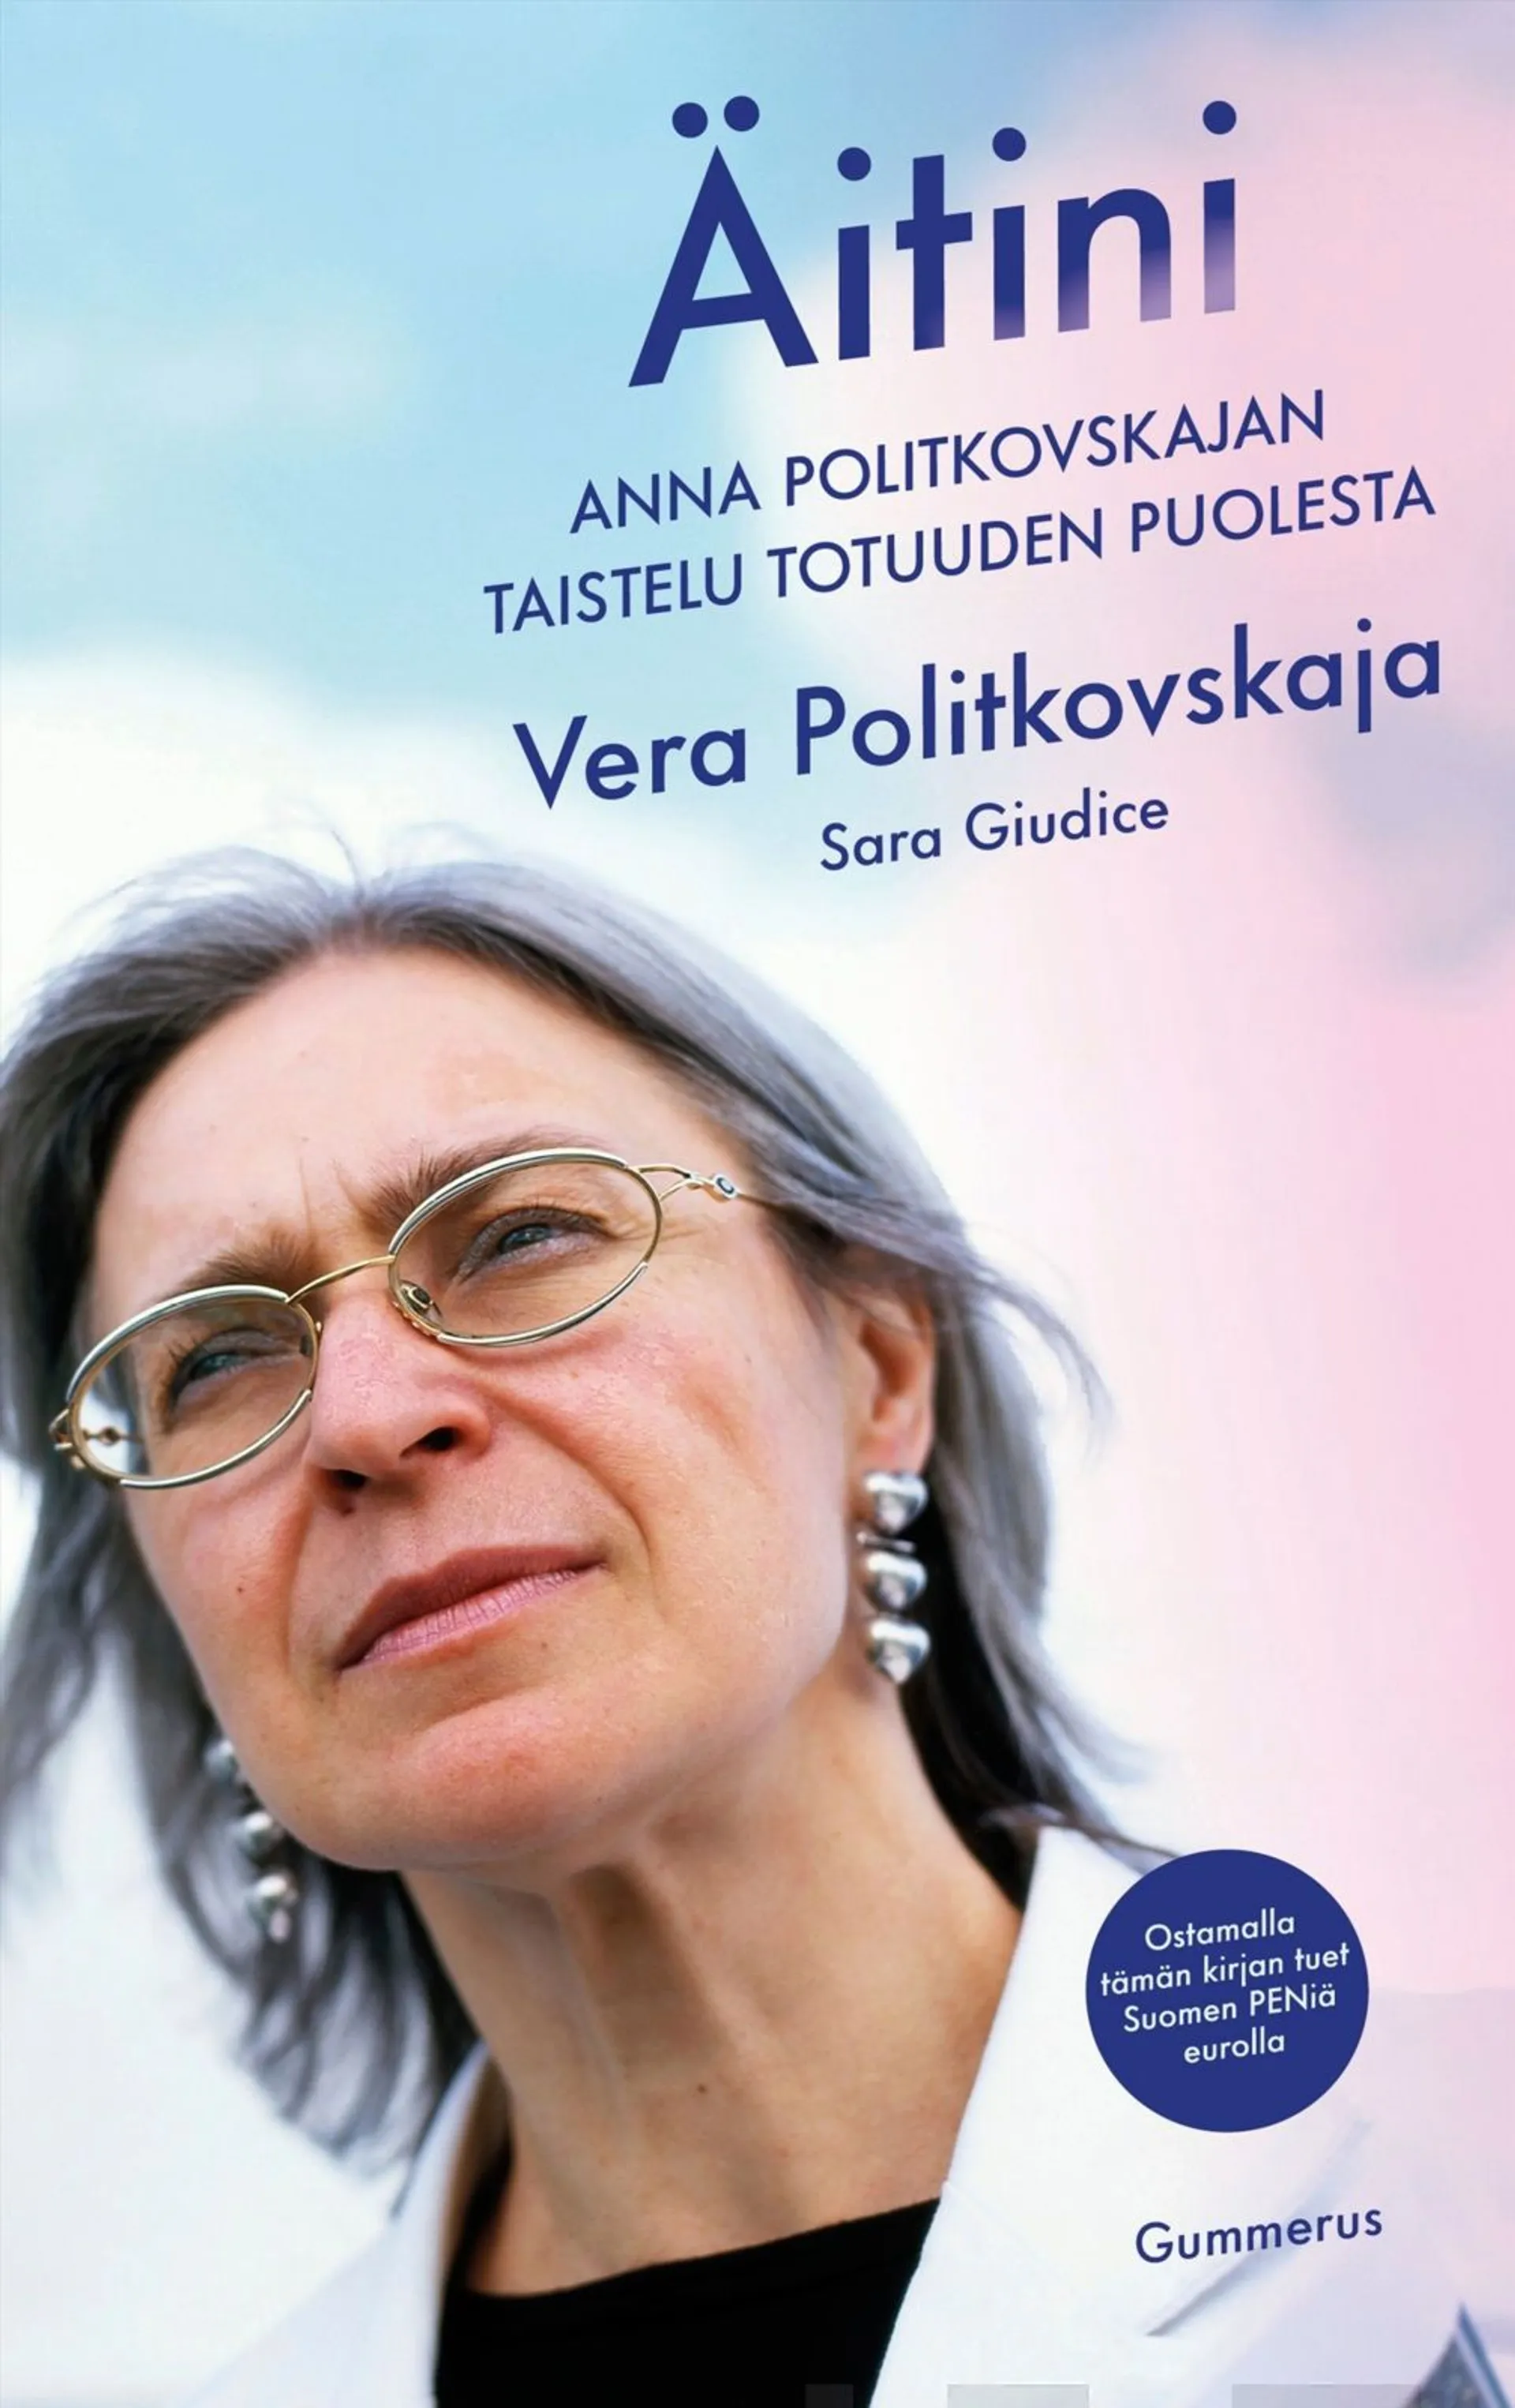 Politkovskaja, Äitini - Anna Politkovskajan taistelu totuuden puolesta